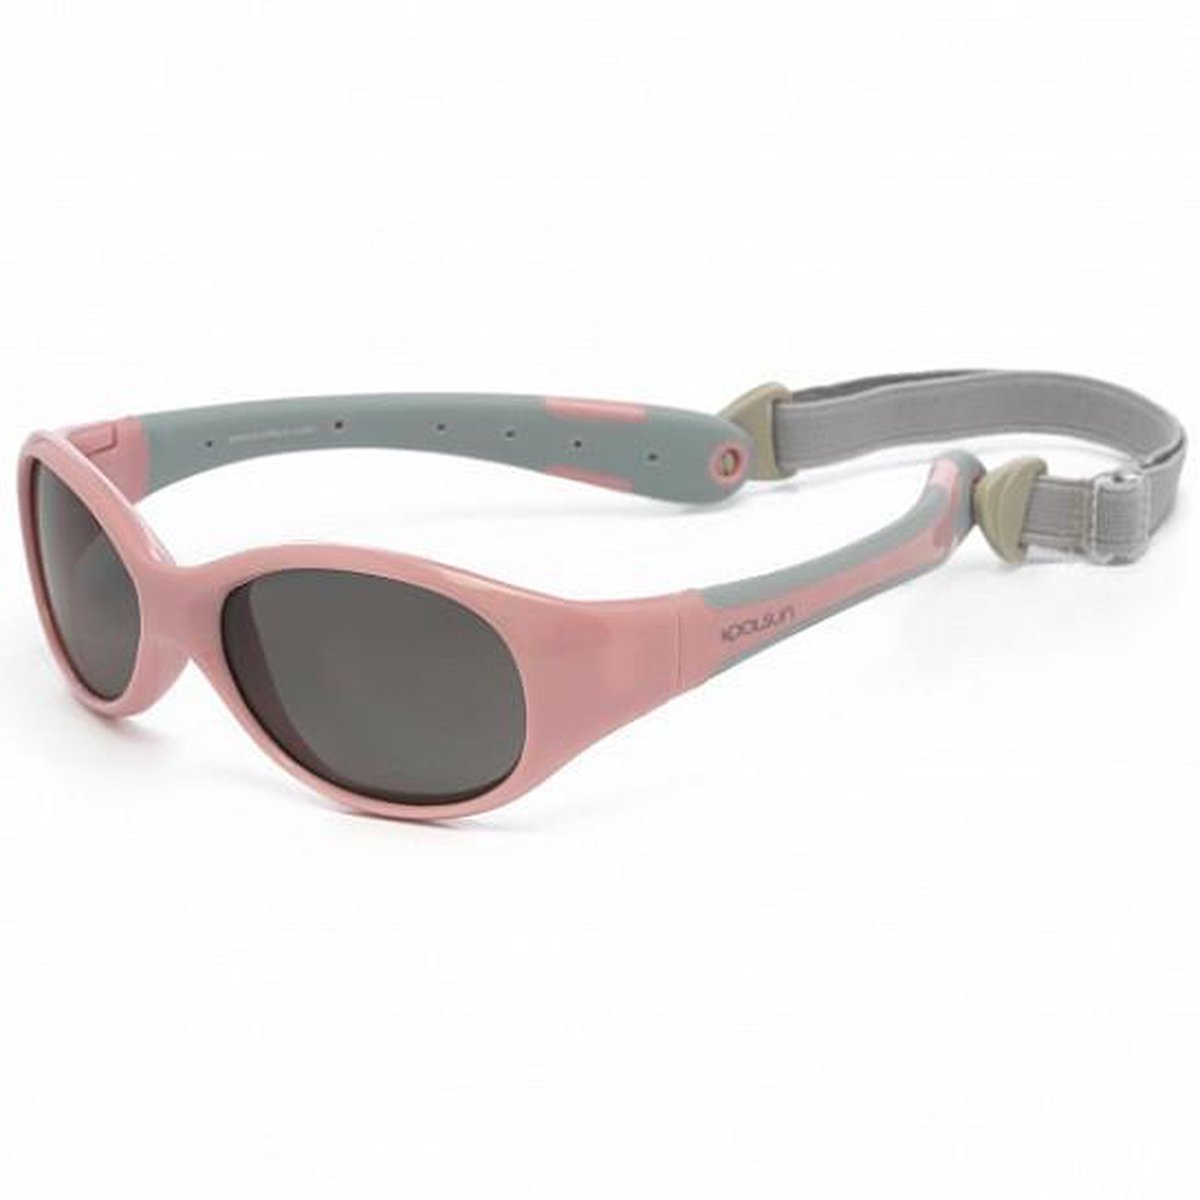 KOOLSUN - Flex - baby zonnebril - Cameo Roze Grijs - 0-3 jaar - UV400 Categorie 3